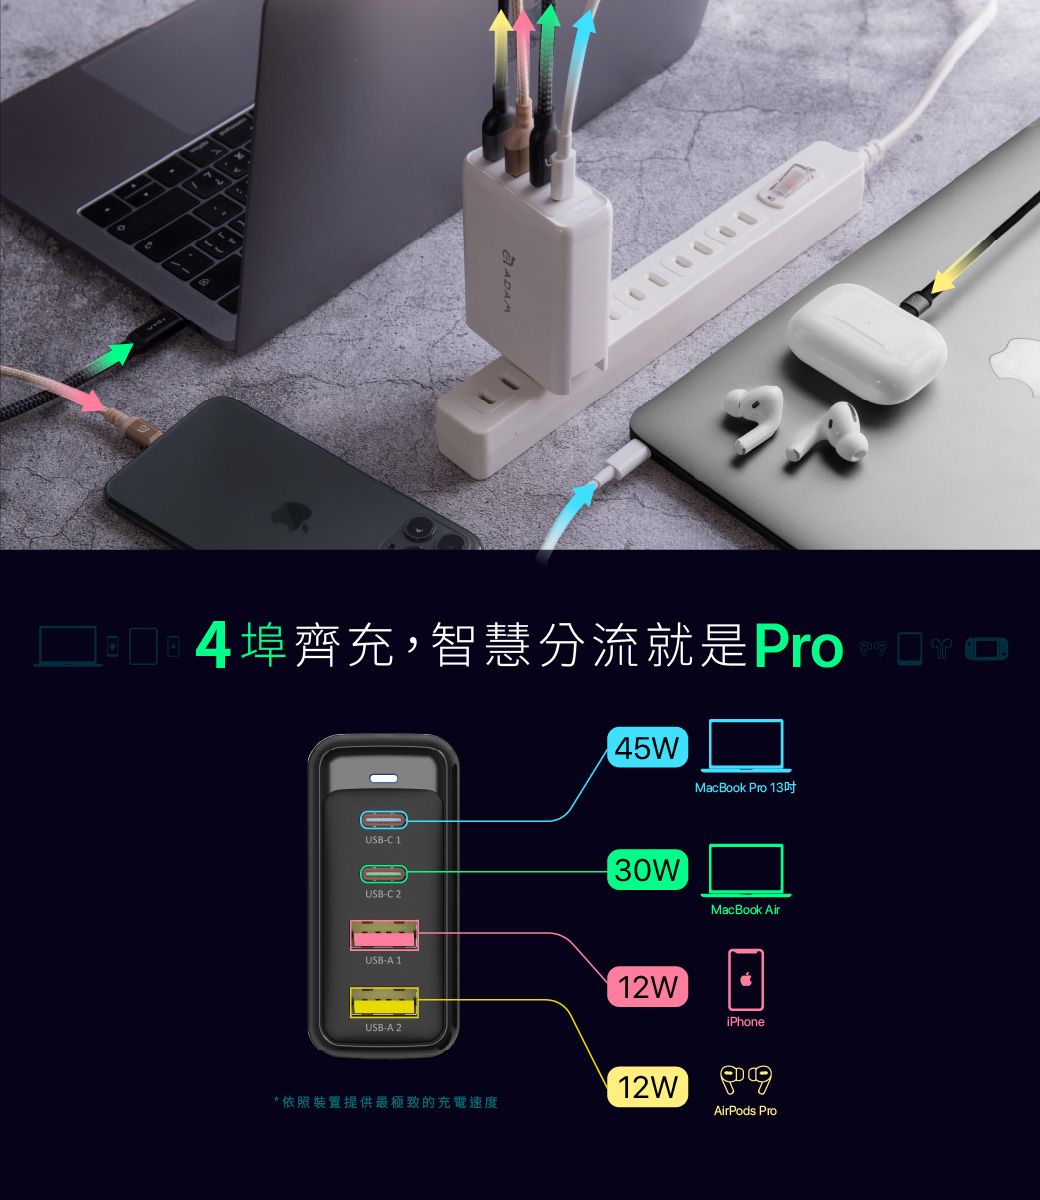 4埠齊充,智慧分流就是ProUSB-C145WMacBook Pro 13USB-C 230WMacBook AirUSB-A 112WiPhoneUSB-A 2*依照裝置提供最極致的充電速度12WAirPods Pro